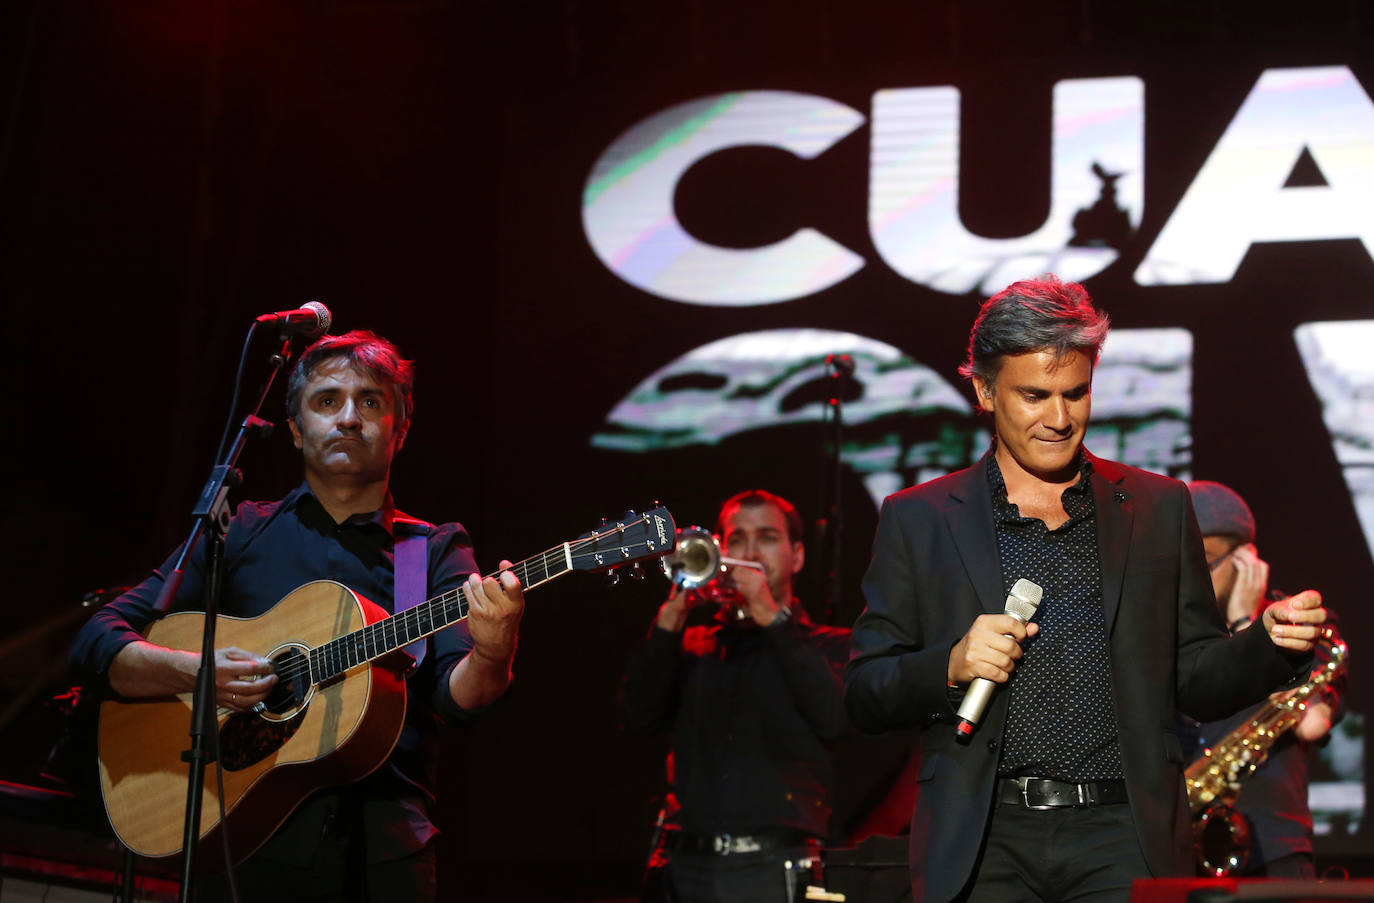 El cantante ofreció un concierto en el día grande de las fiestas de Oviedo